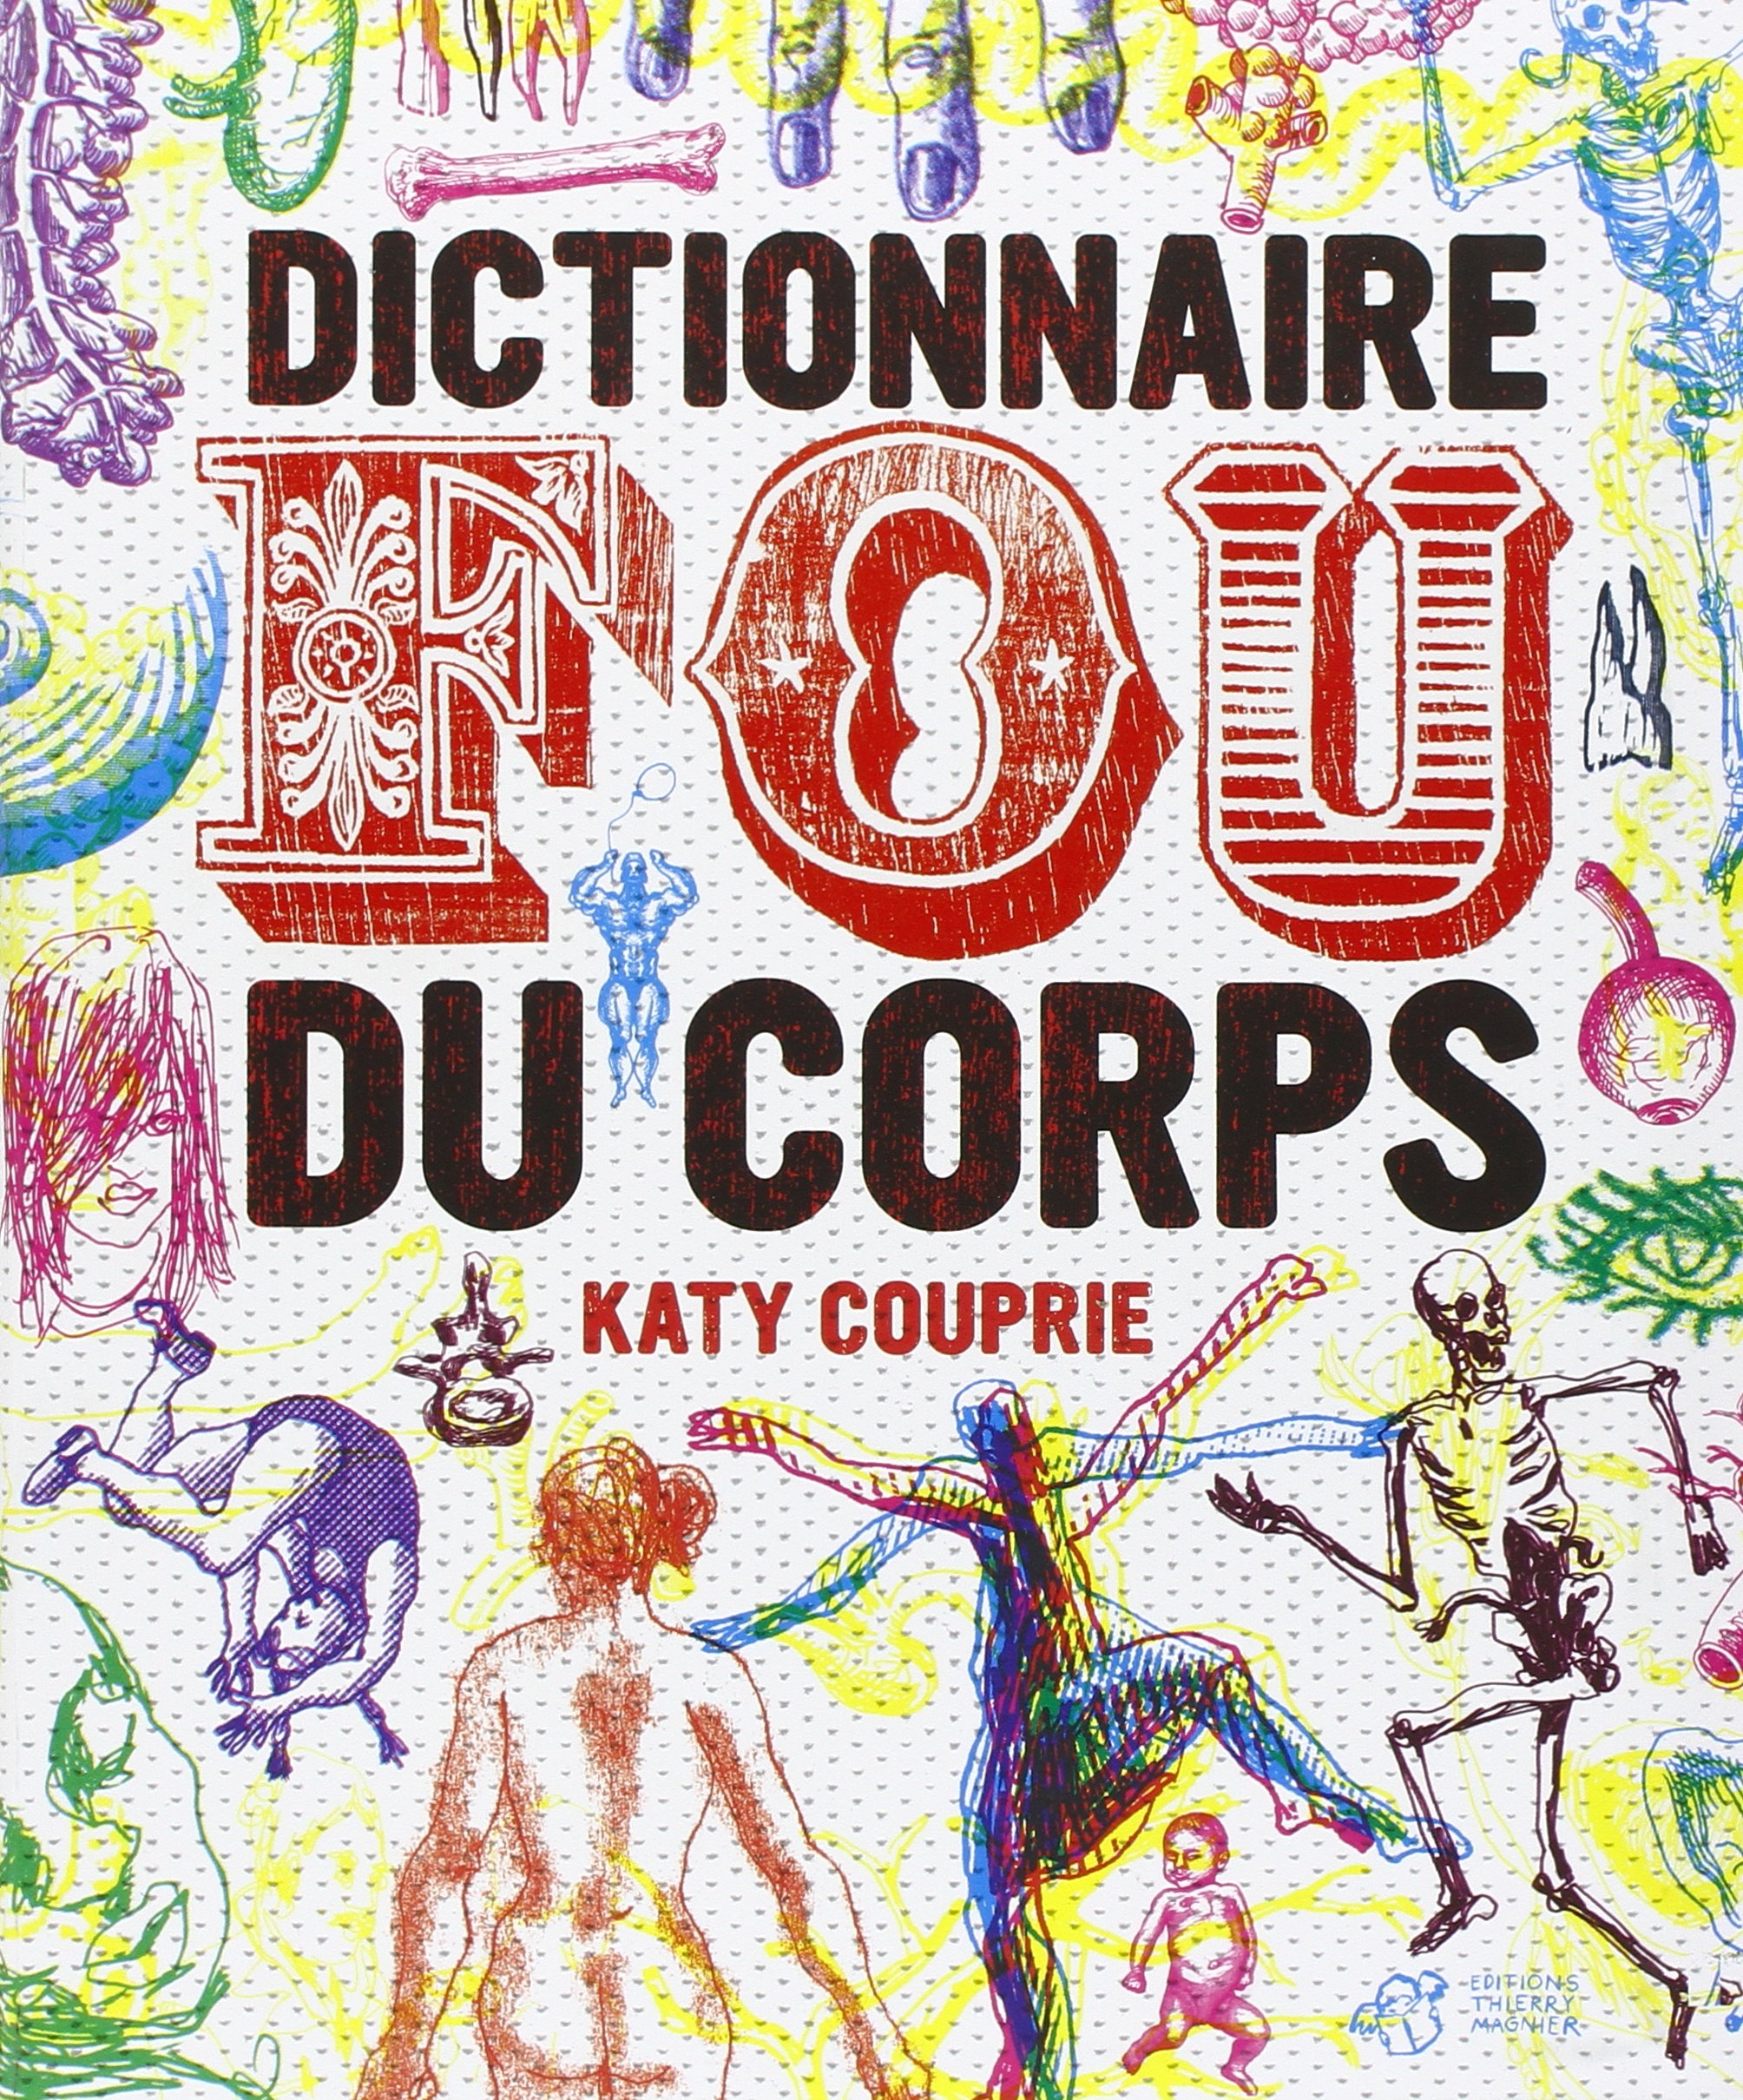 Katy Couprie, Dictionnaire fou du corps, Paris, Editions Thierry Magnier, 2012.